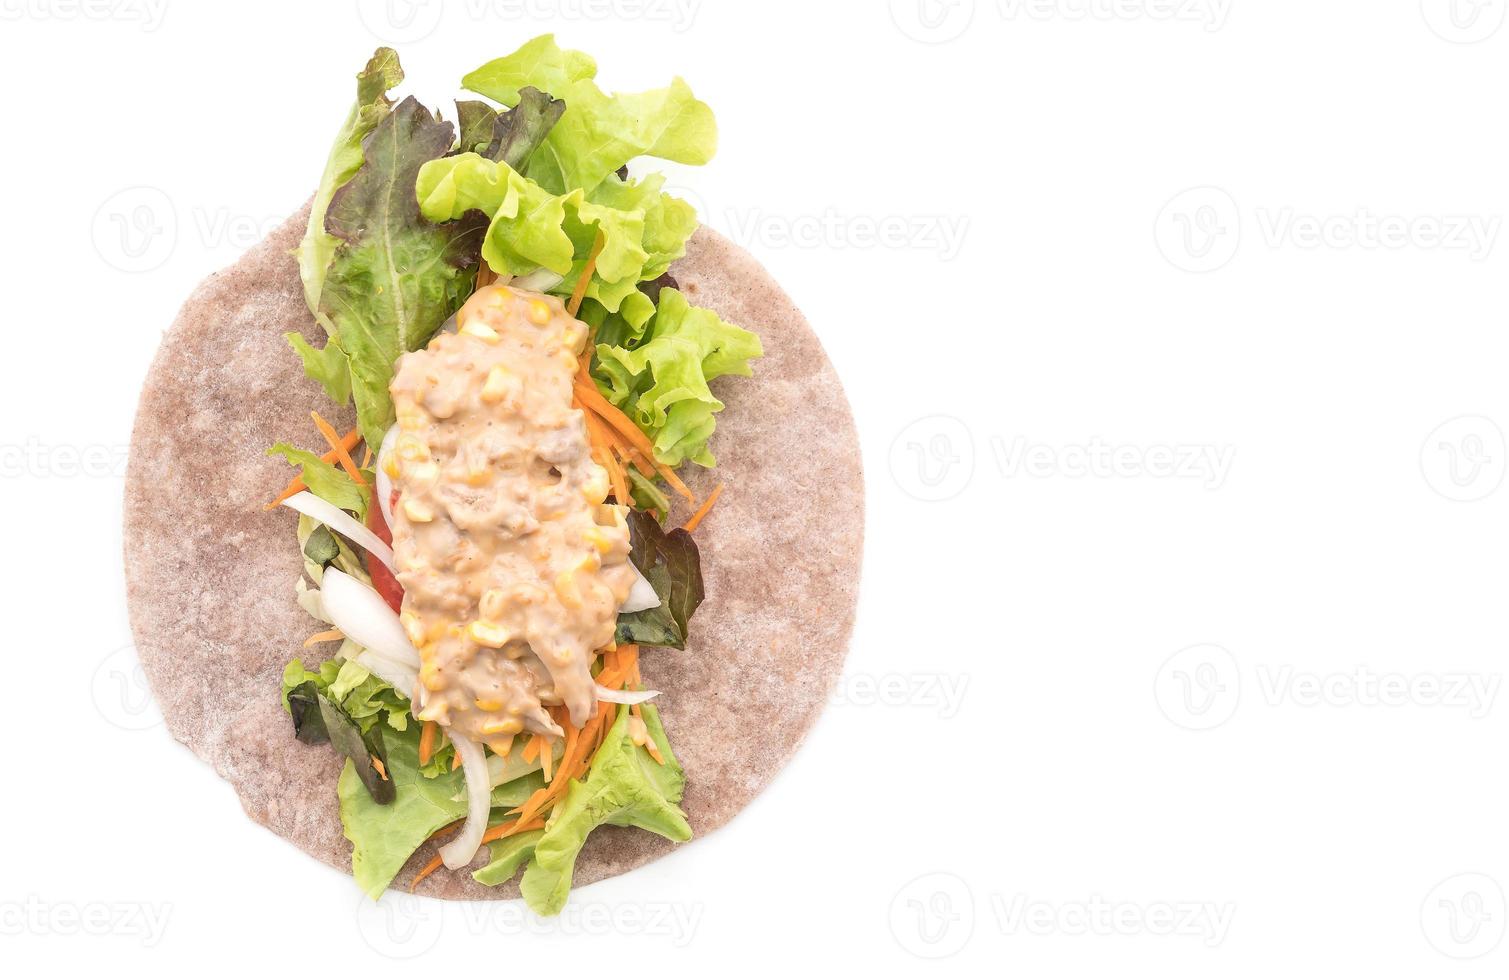 Wrap rouleau de salade avec salade de maïs au thon sur fond blanc photo